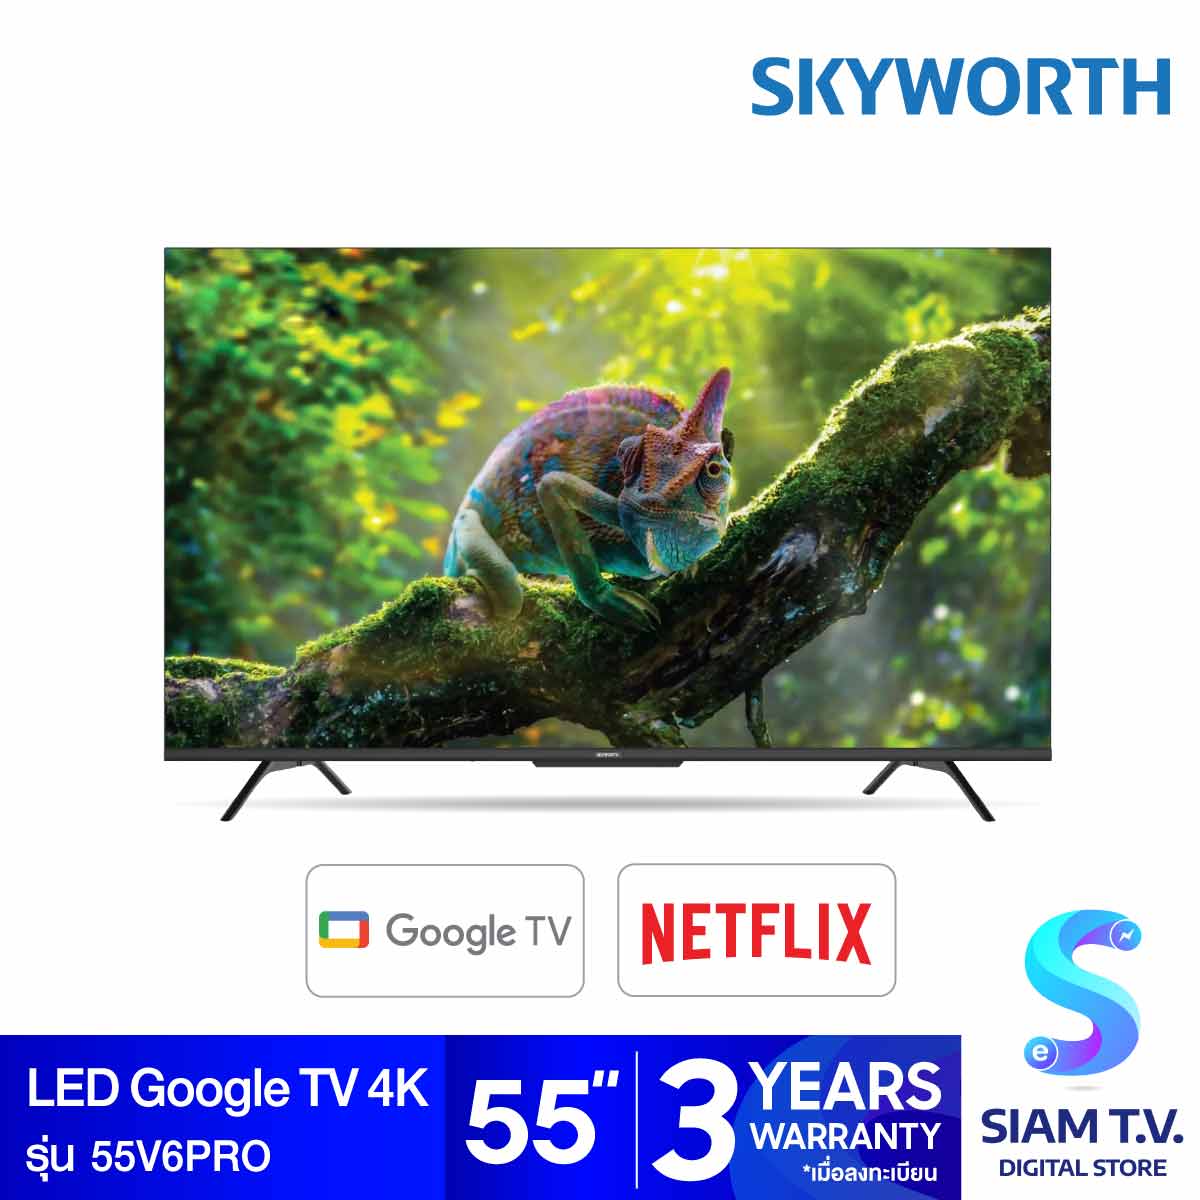 โปรโมชั่น Flash Sale : SKYWORTH LED Google TV 4K รุ่น 55V6PRO Google TV จอไร้ขอบ ขนาด 55 นิ้ว โดย สยามทีวี by Siam T.V.